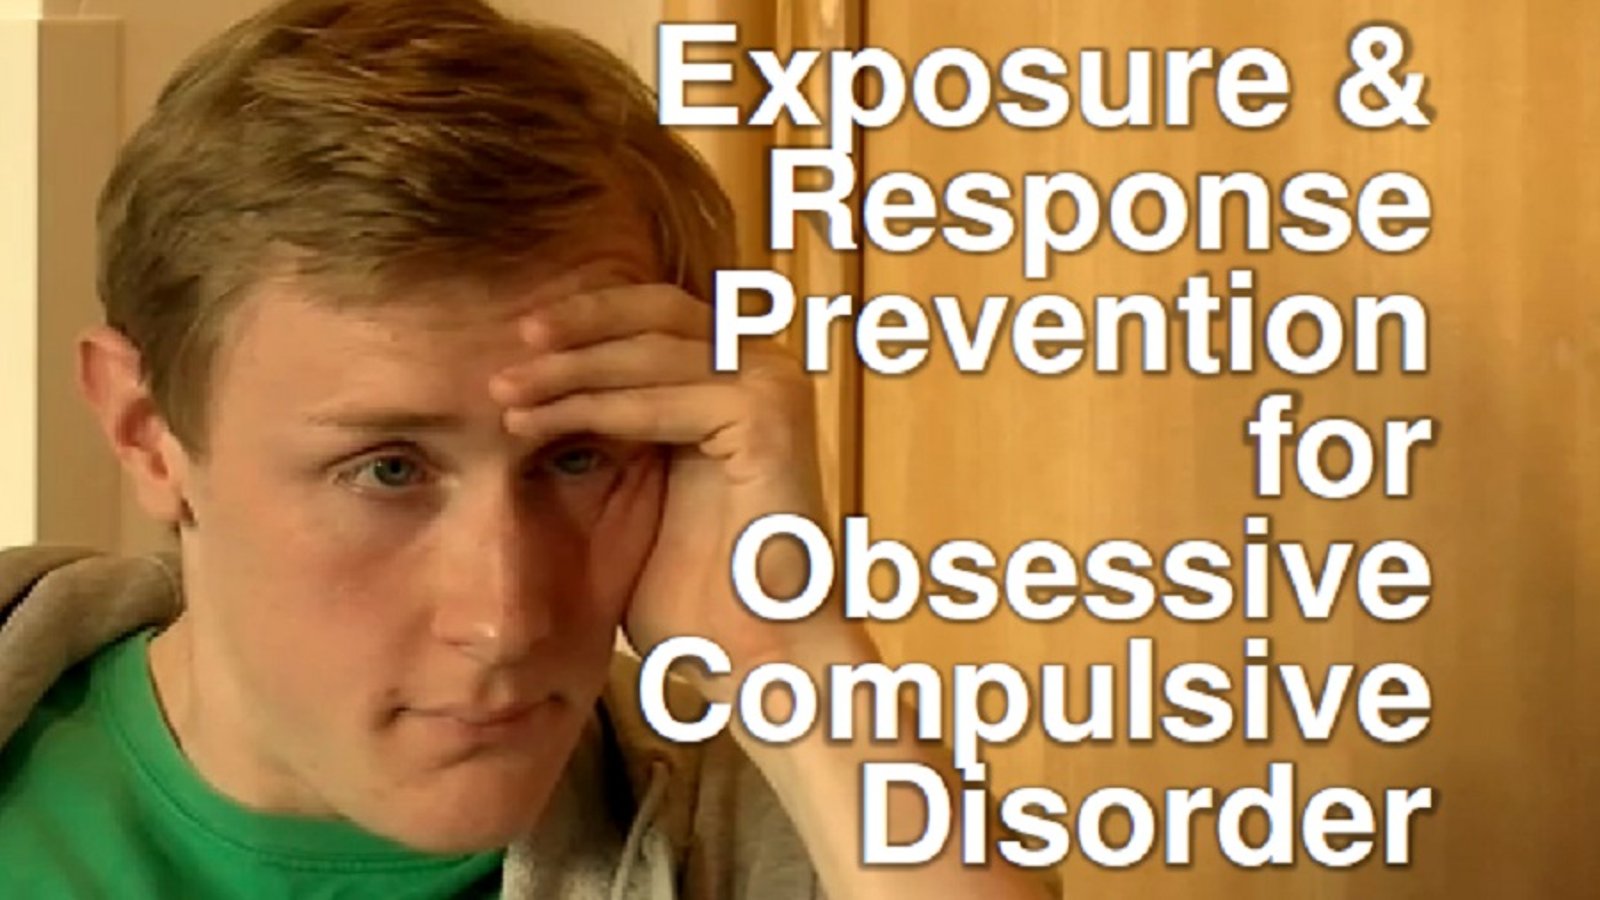 Exposure & Response Prevention for Obsessive Compulsive Disorder